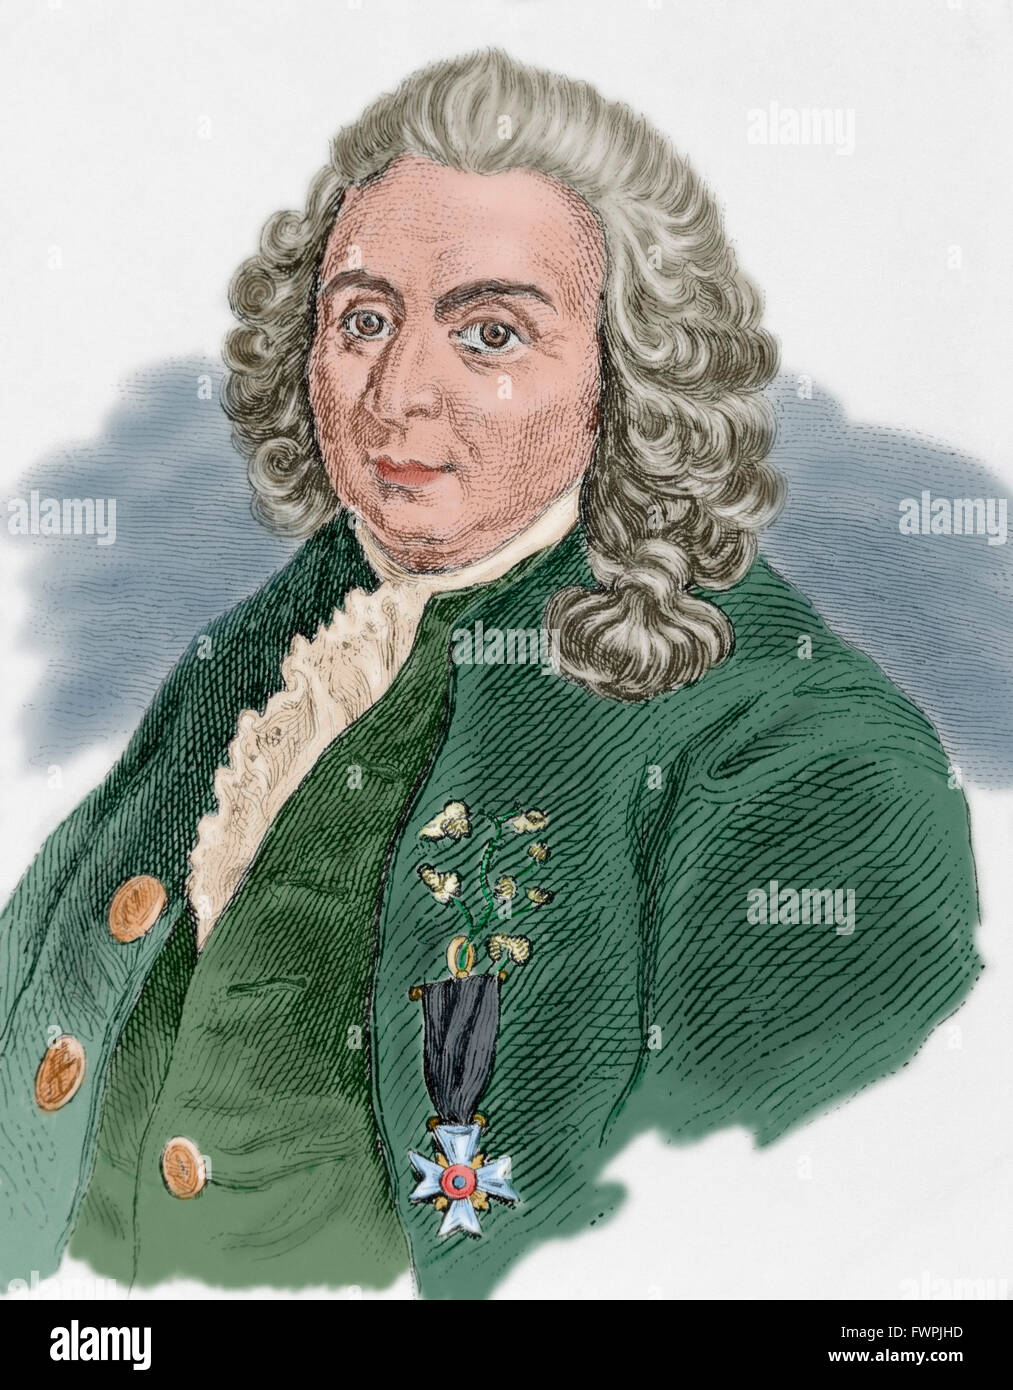 Carl von Linné (1707-1778). Schwedischer Arzt und Botaniker. Porträt. Gravur. Farbige. Stockfoto